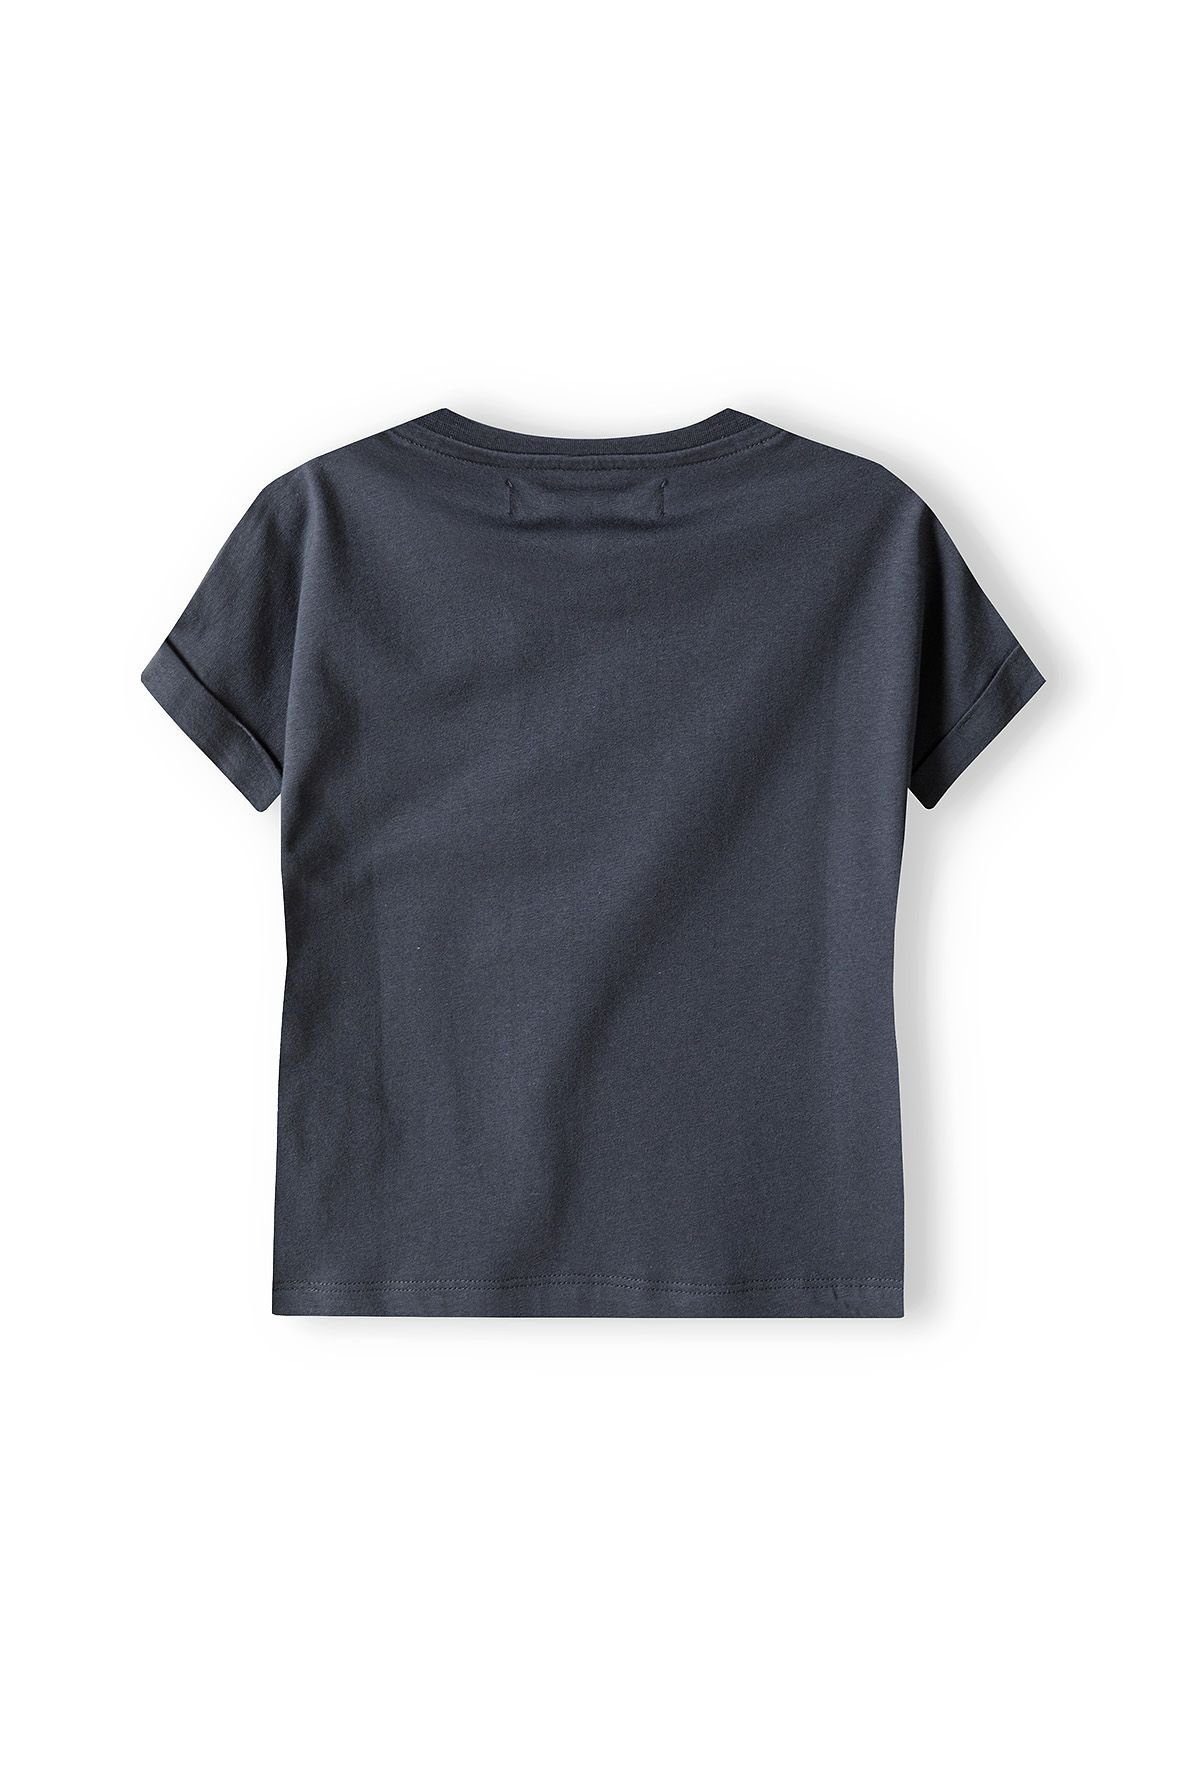 T-Shirt Dunkelgrau (12m-8y) MINOTI T-Shirt